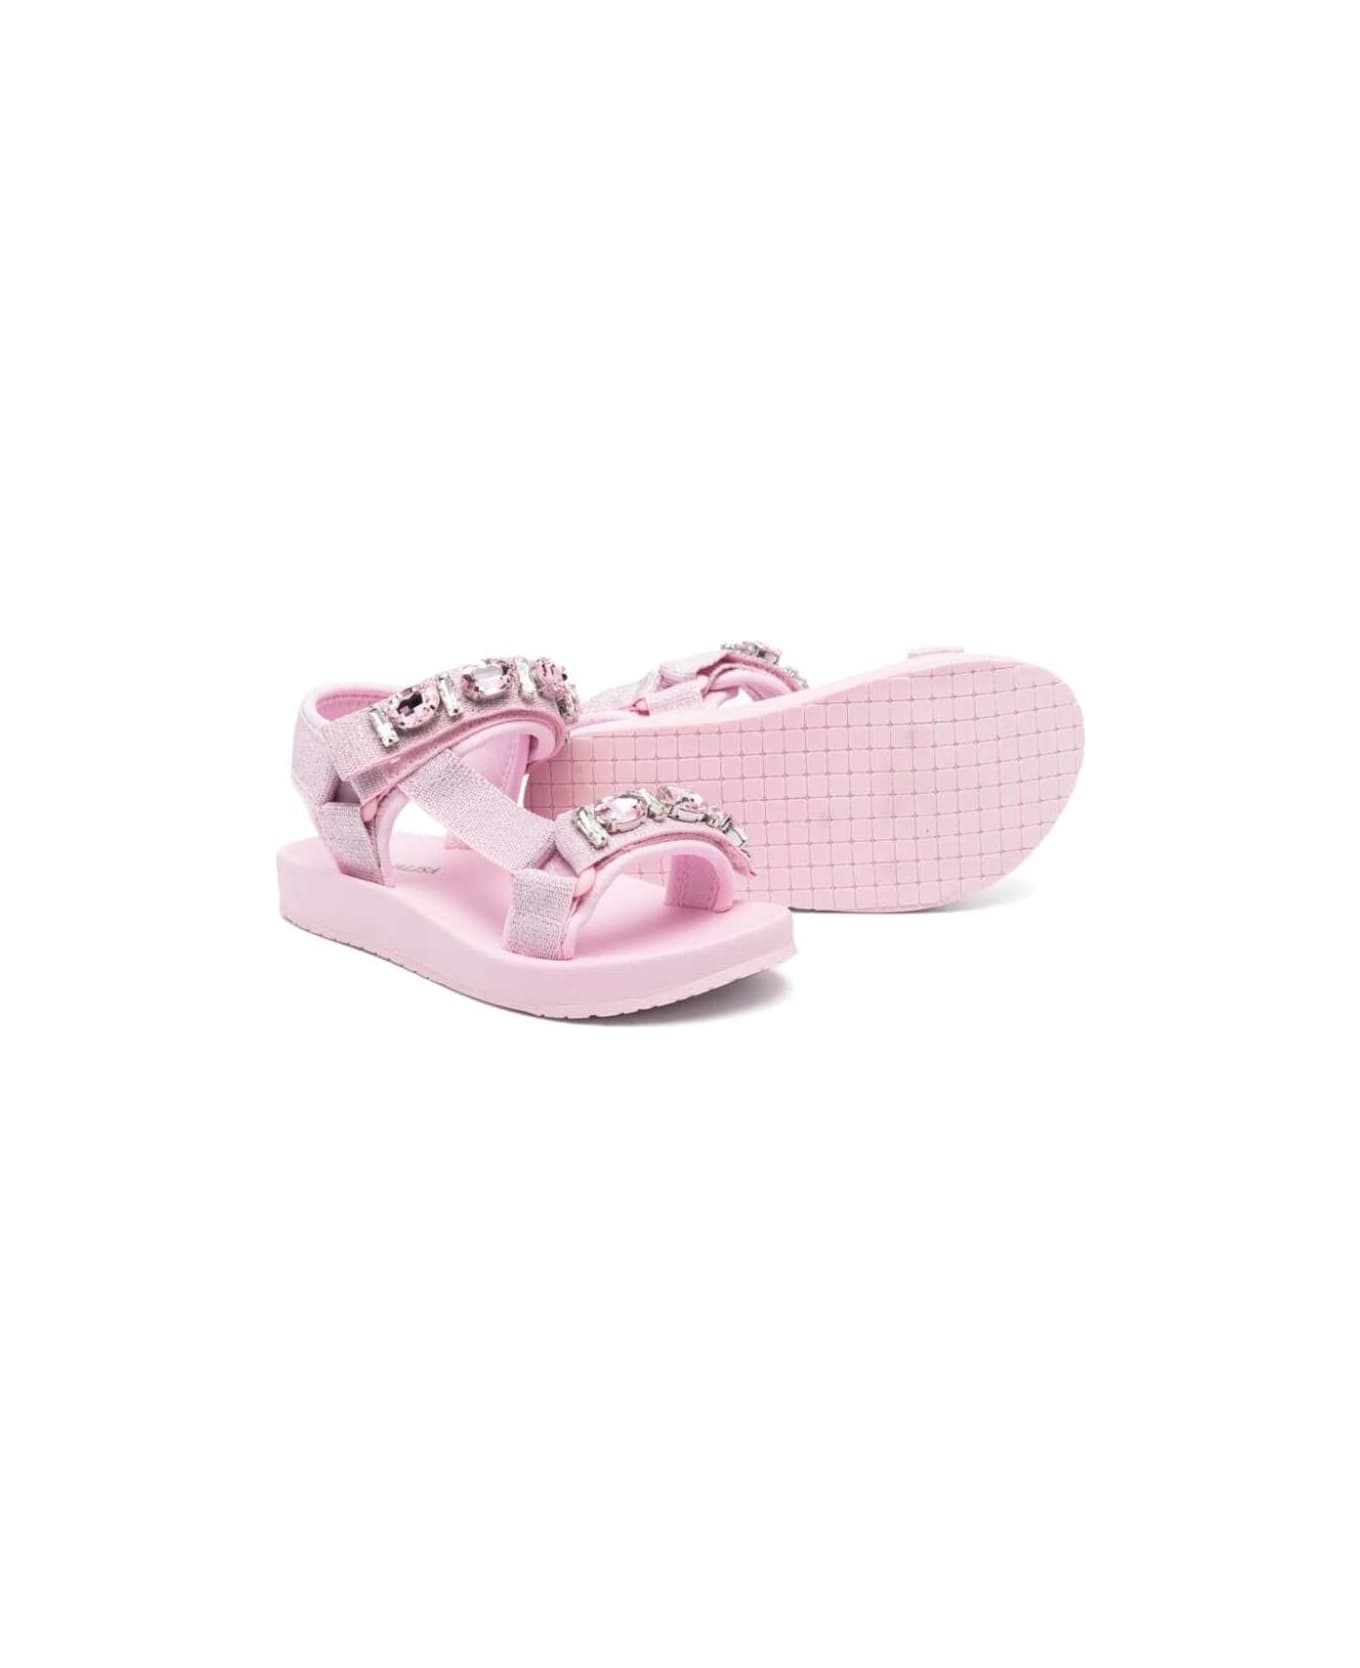 Monnalisa Pink Sandals With Rhinestones In Polyamide Girl - Pink シューズ